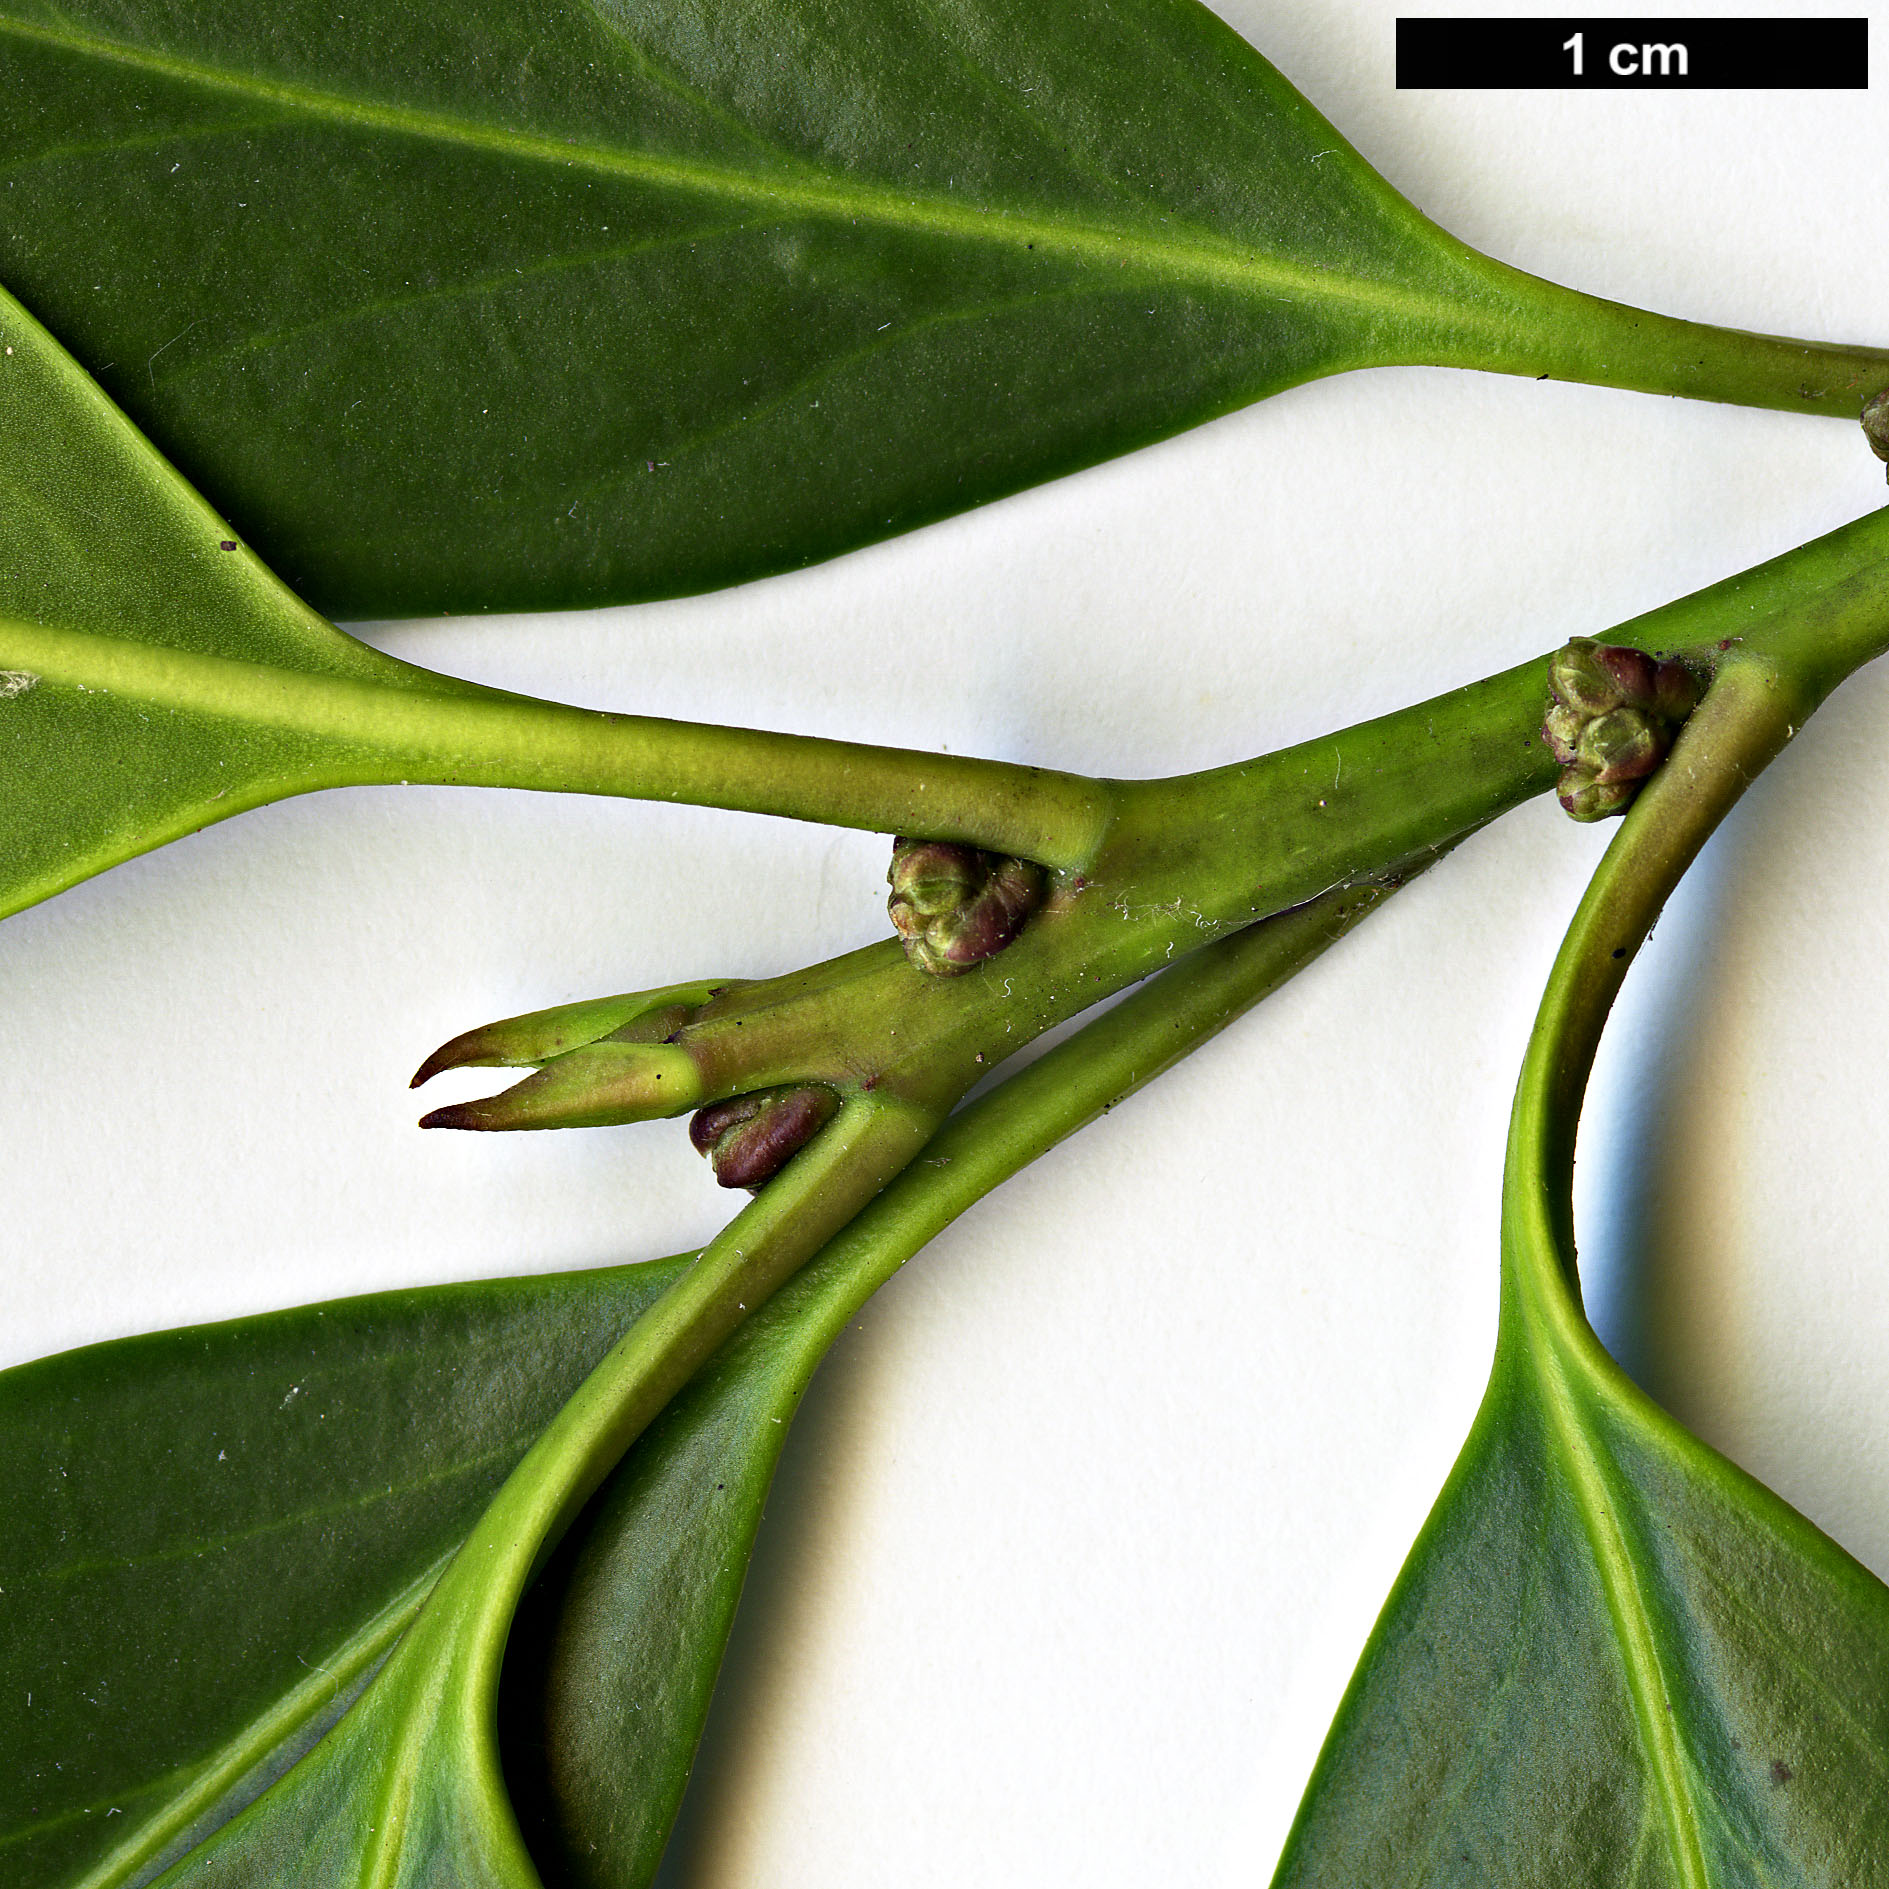 High resolution image: Family: Aquifoliaceae - Genus: Ilex - Taxon: integra - SpeciesSub: var. leucoclada